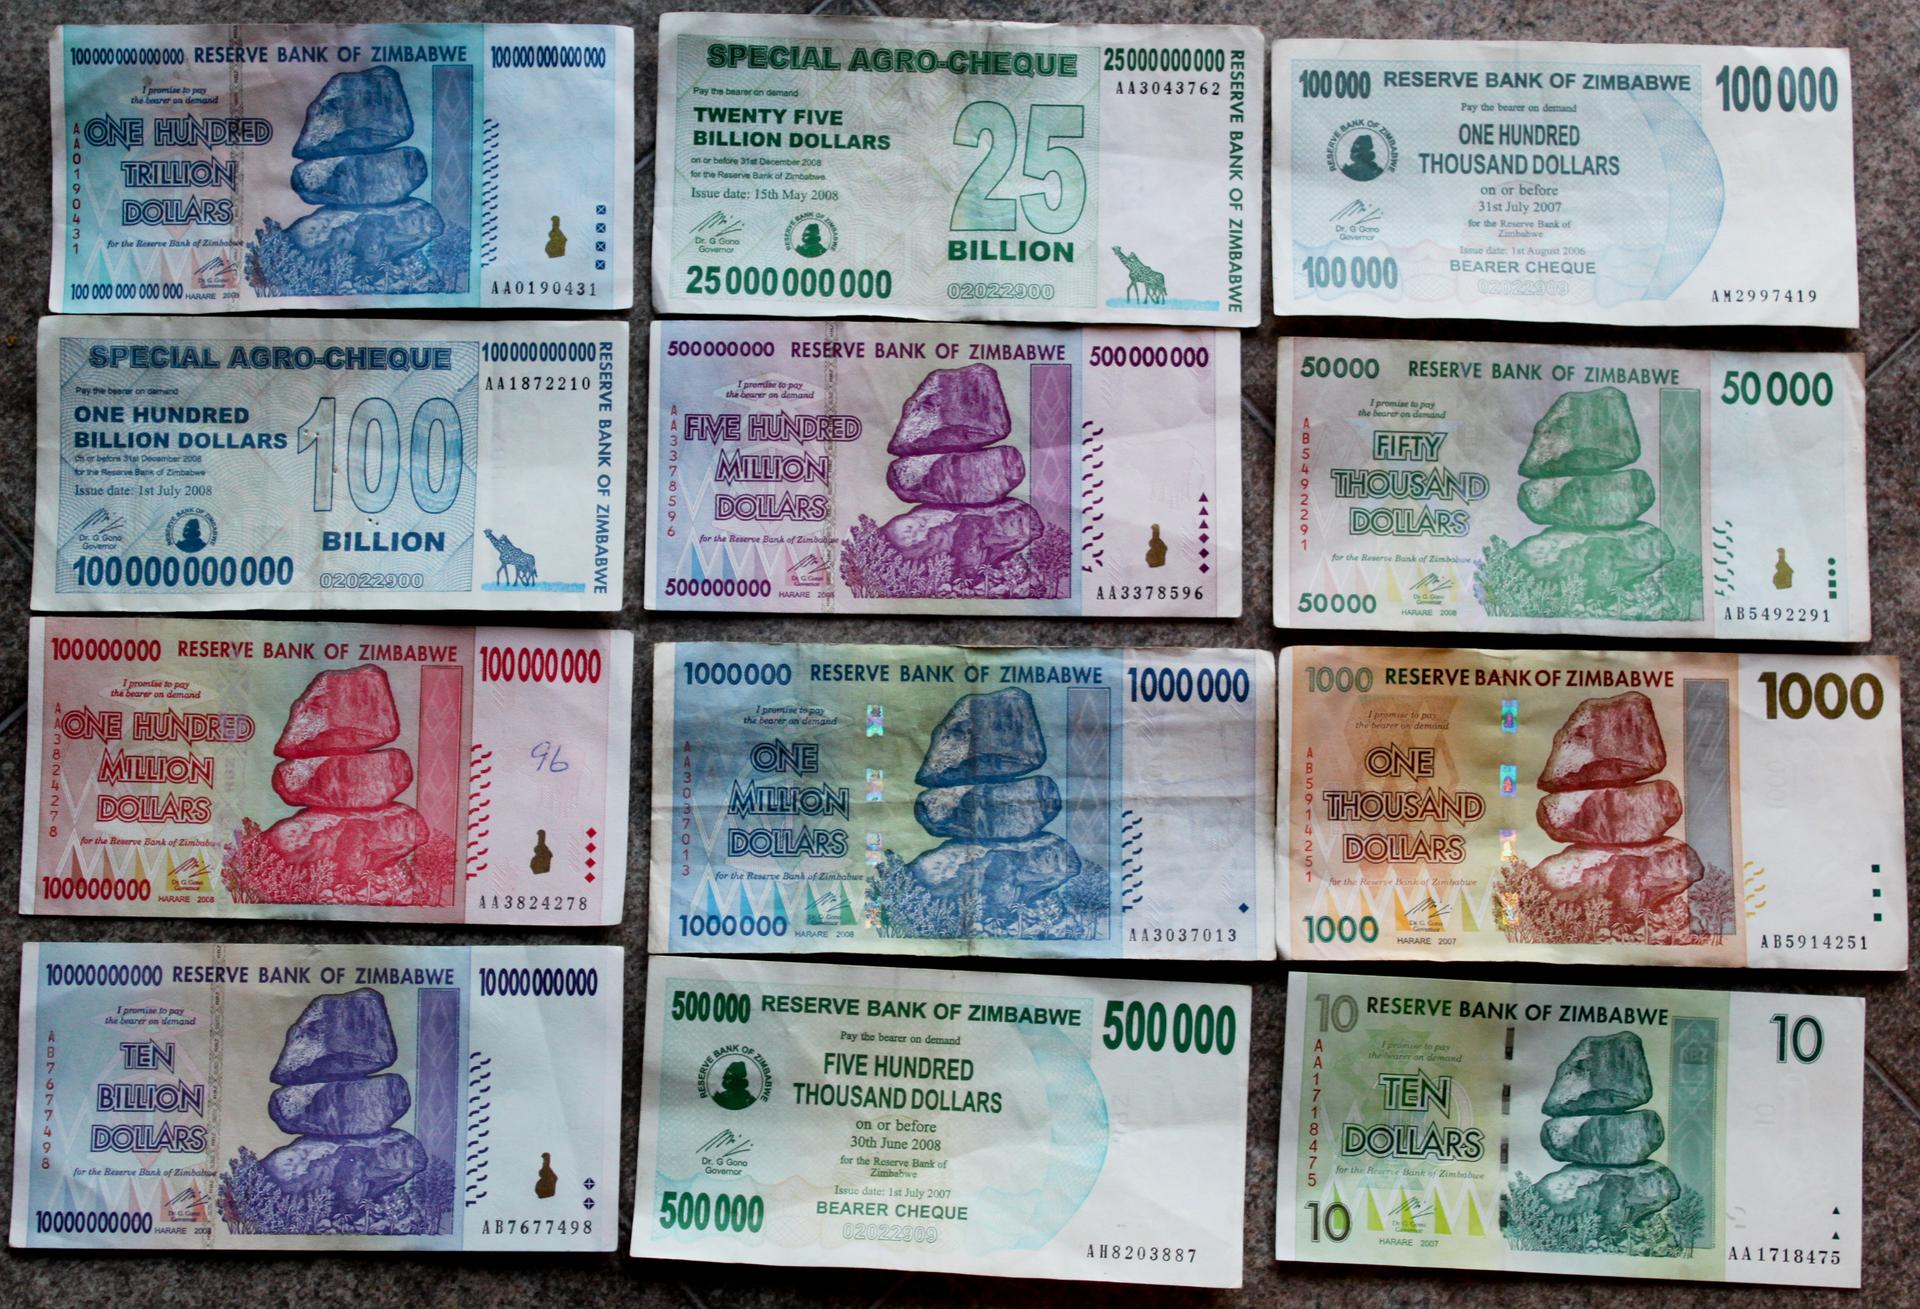 Zimbabwe bank notes.